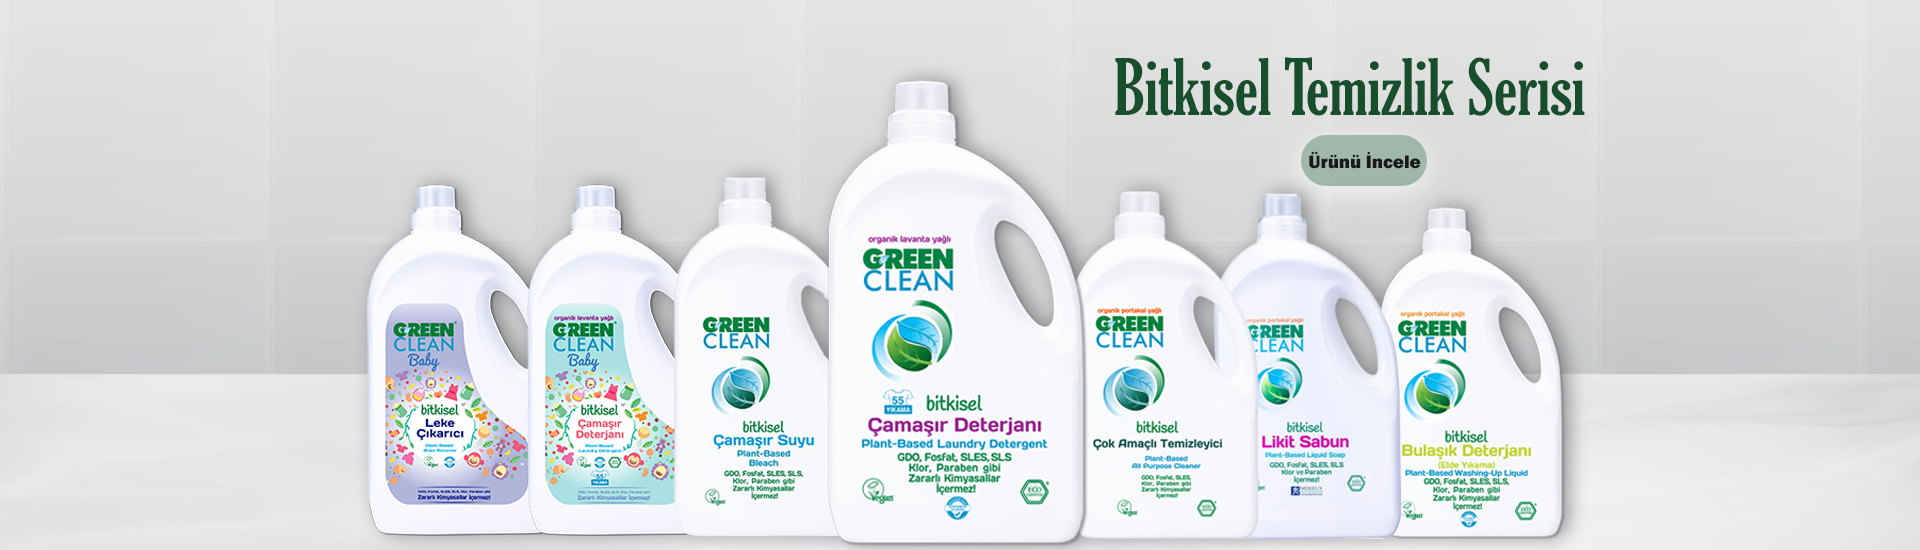 Green Clean Bitkisel Temizlik Ürünleri